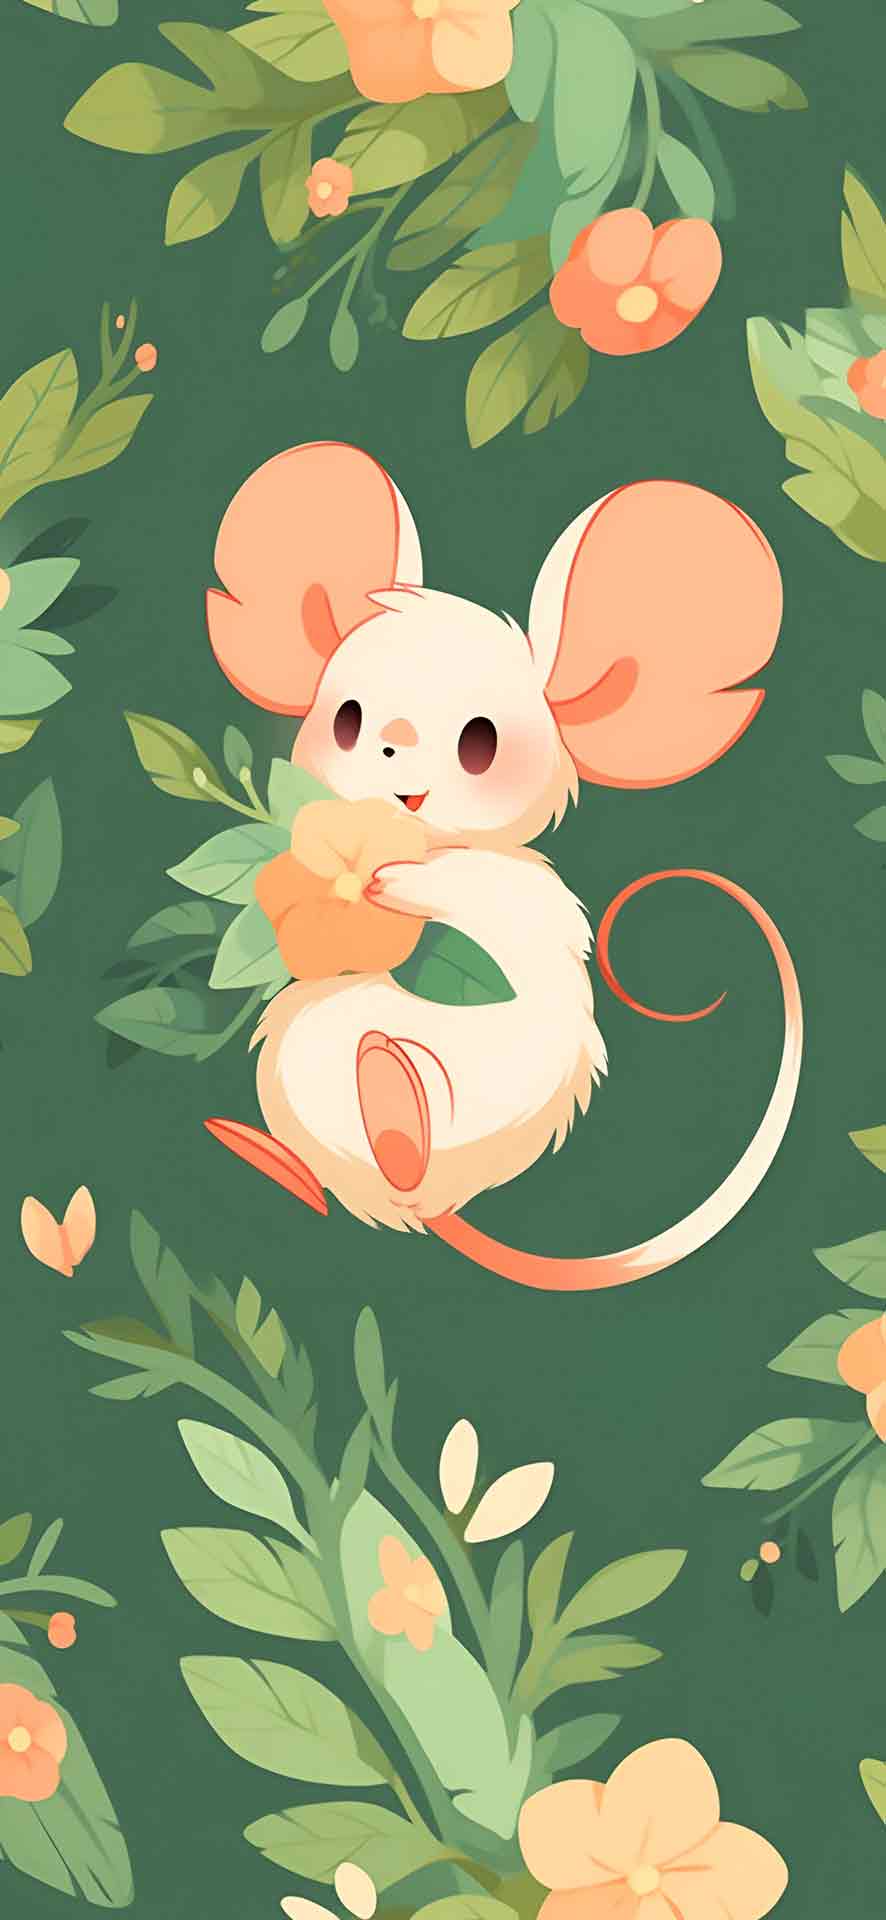 可爱的老鼠与粉红色的花朵壁纸